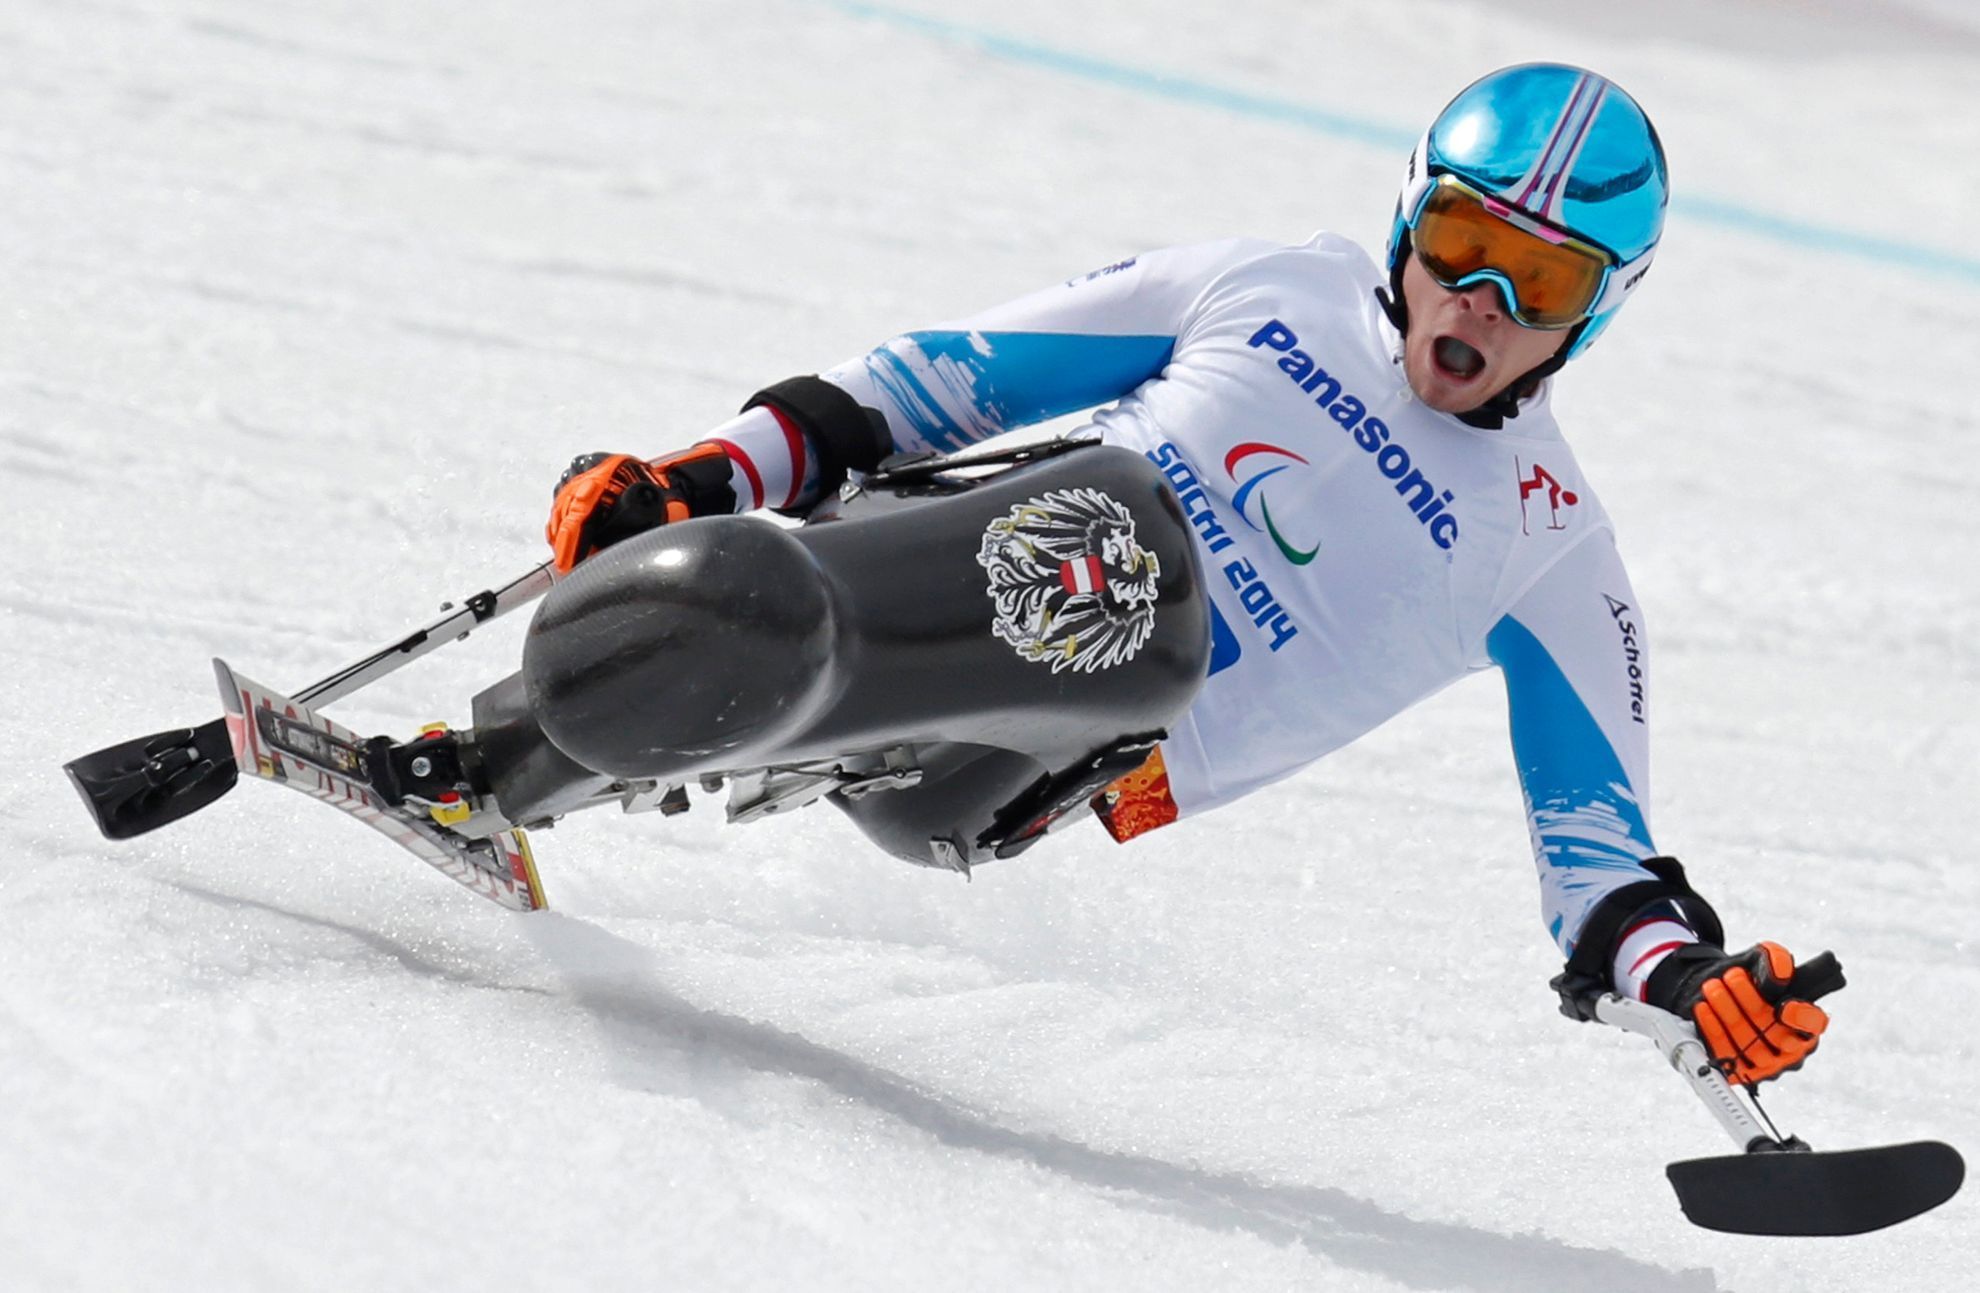 Paralympiáda Soči 2014: Reinhold Sampl